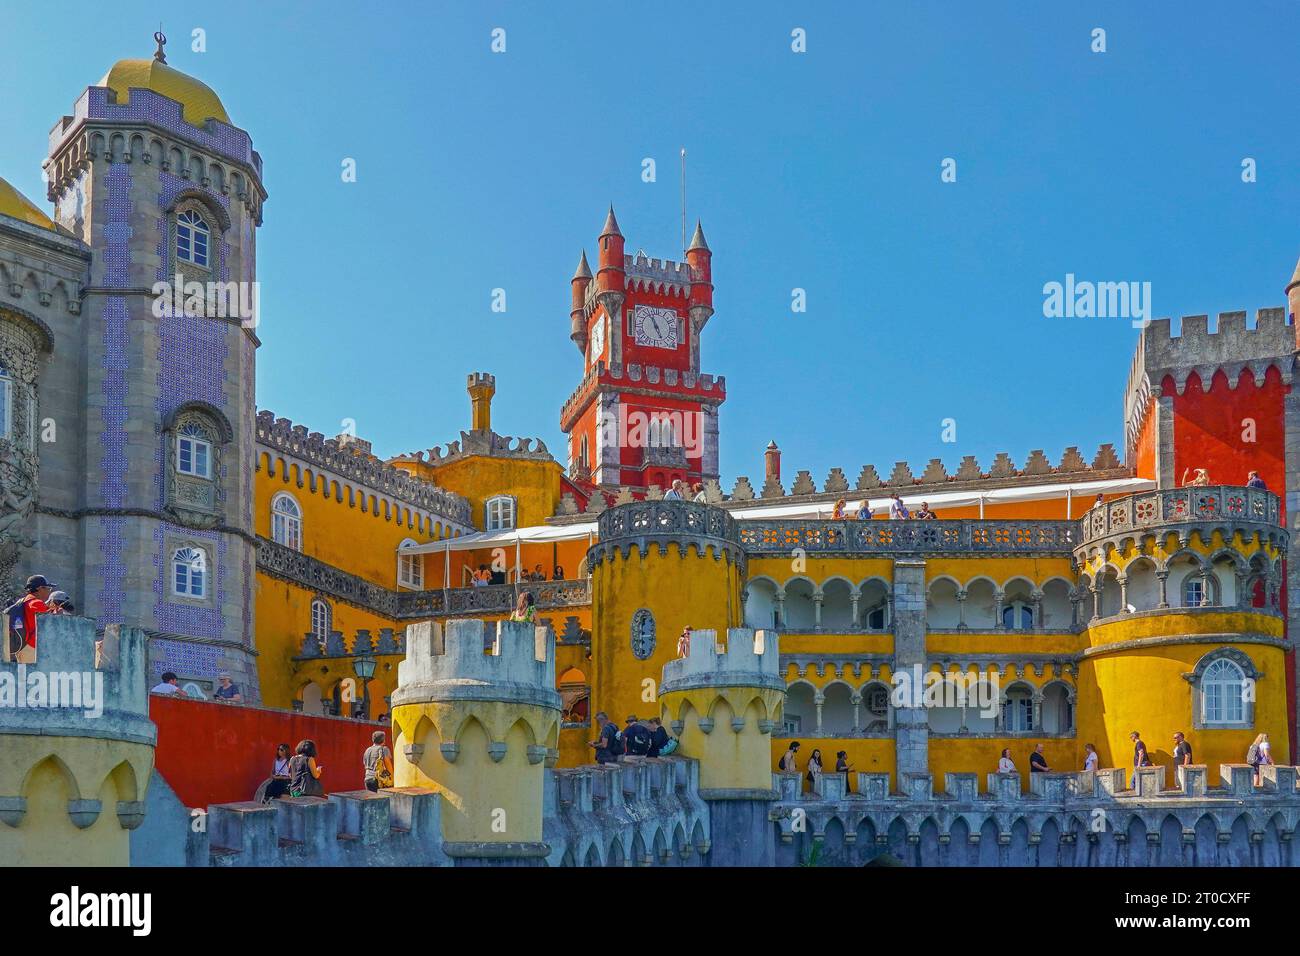 Portogallo, Lisbona, Palacio da pena, è un castello a Sao Pedro de Penaferrim, nel comune di Sintra, sulla Riviera portoghese. Foto Stock